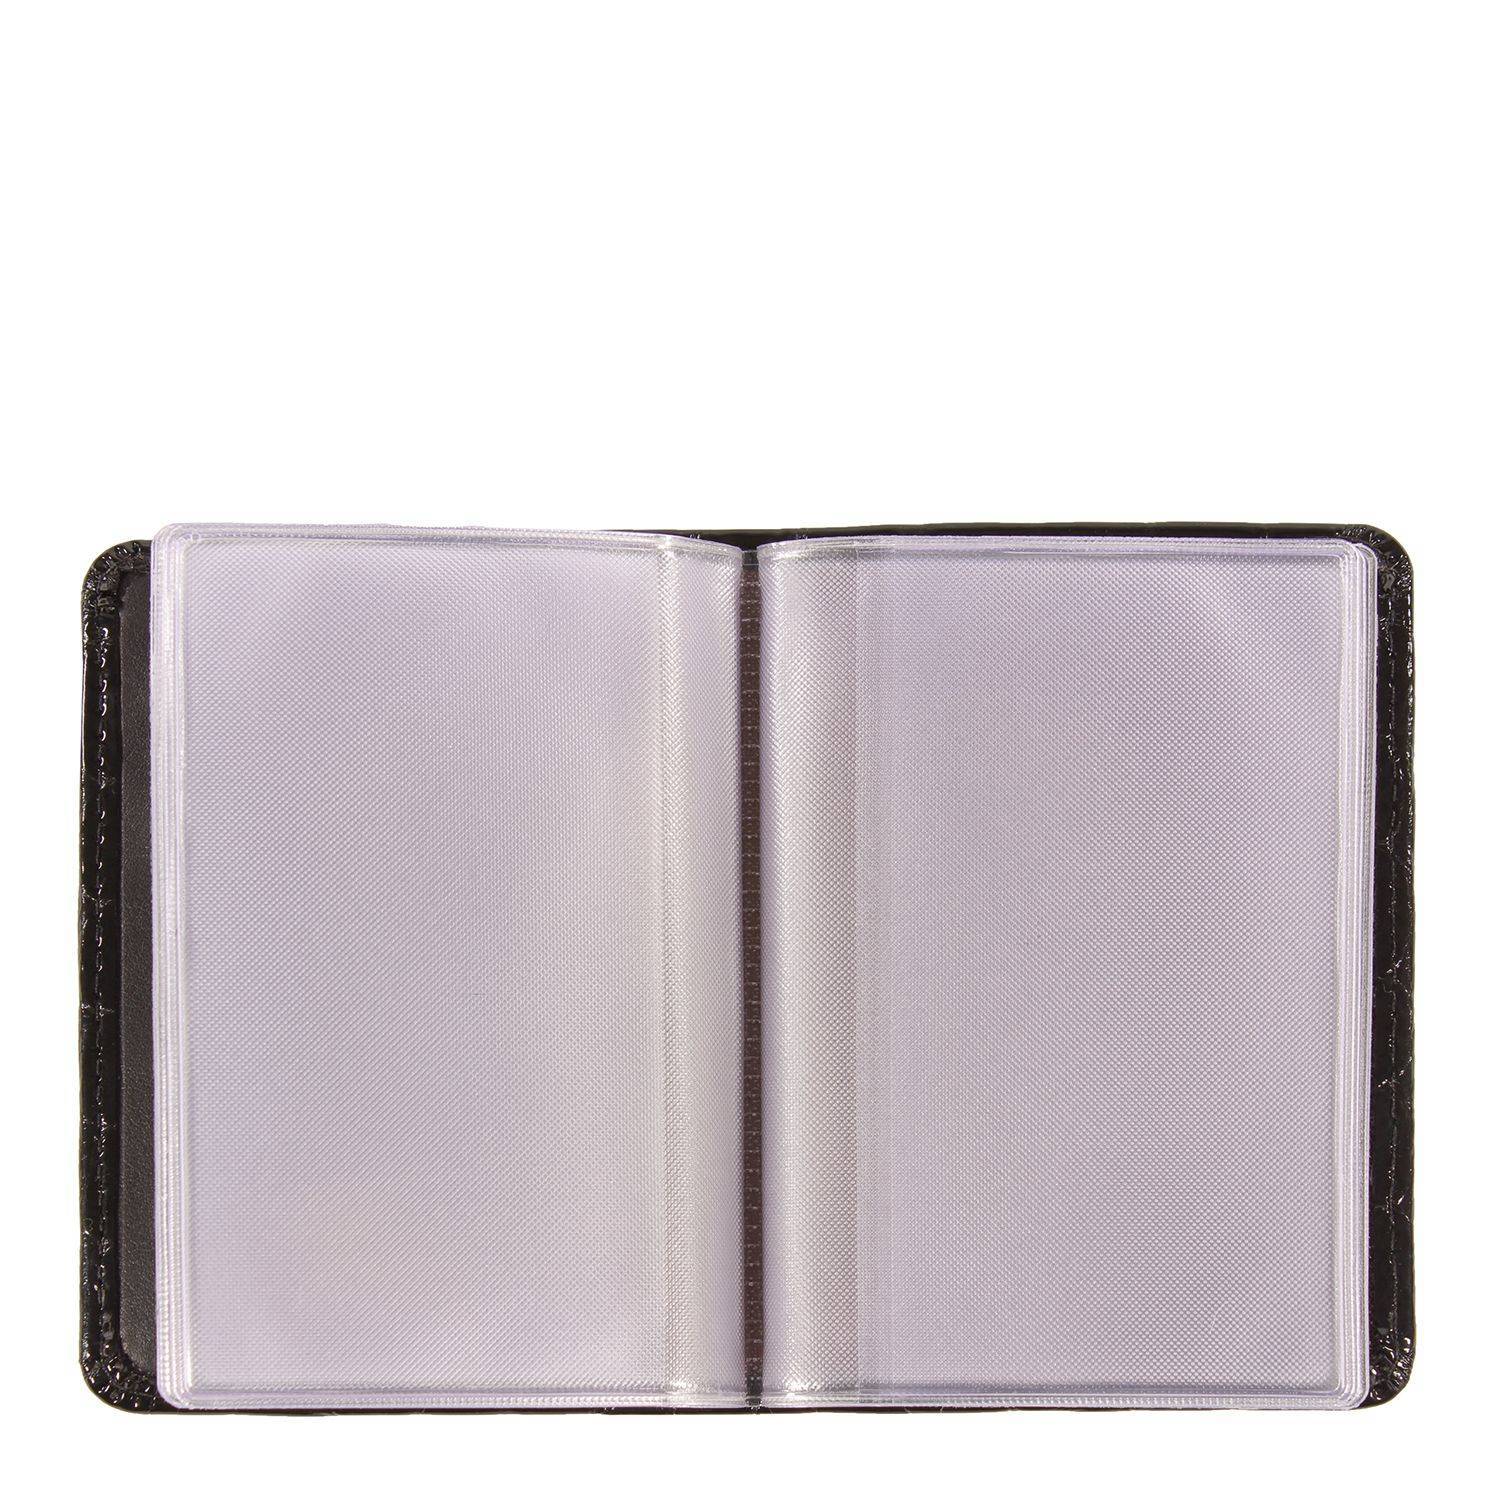 Чехол для кредитных карт Braun Buffel VERONA Card Case 40400, цвет черный, размер ONE SIZE - фото 3